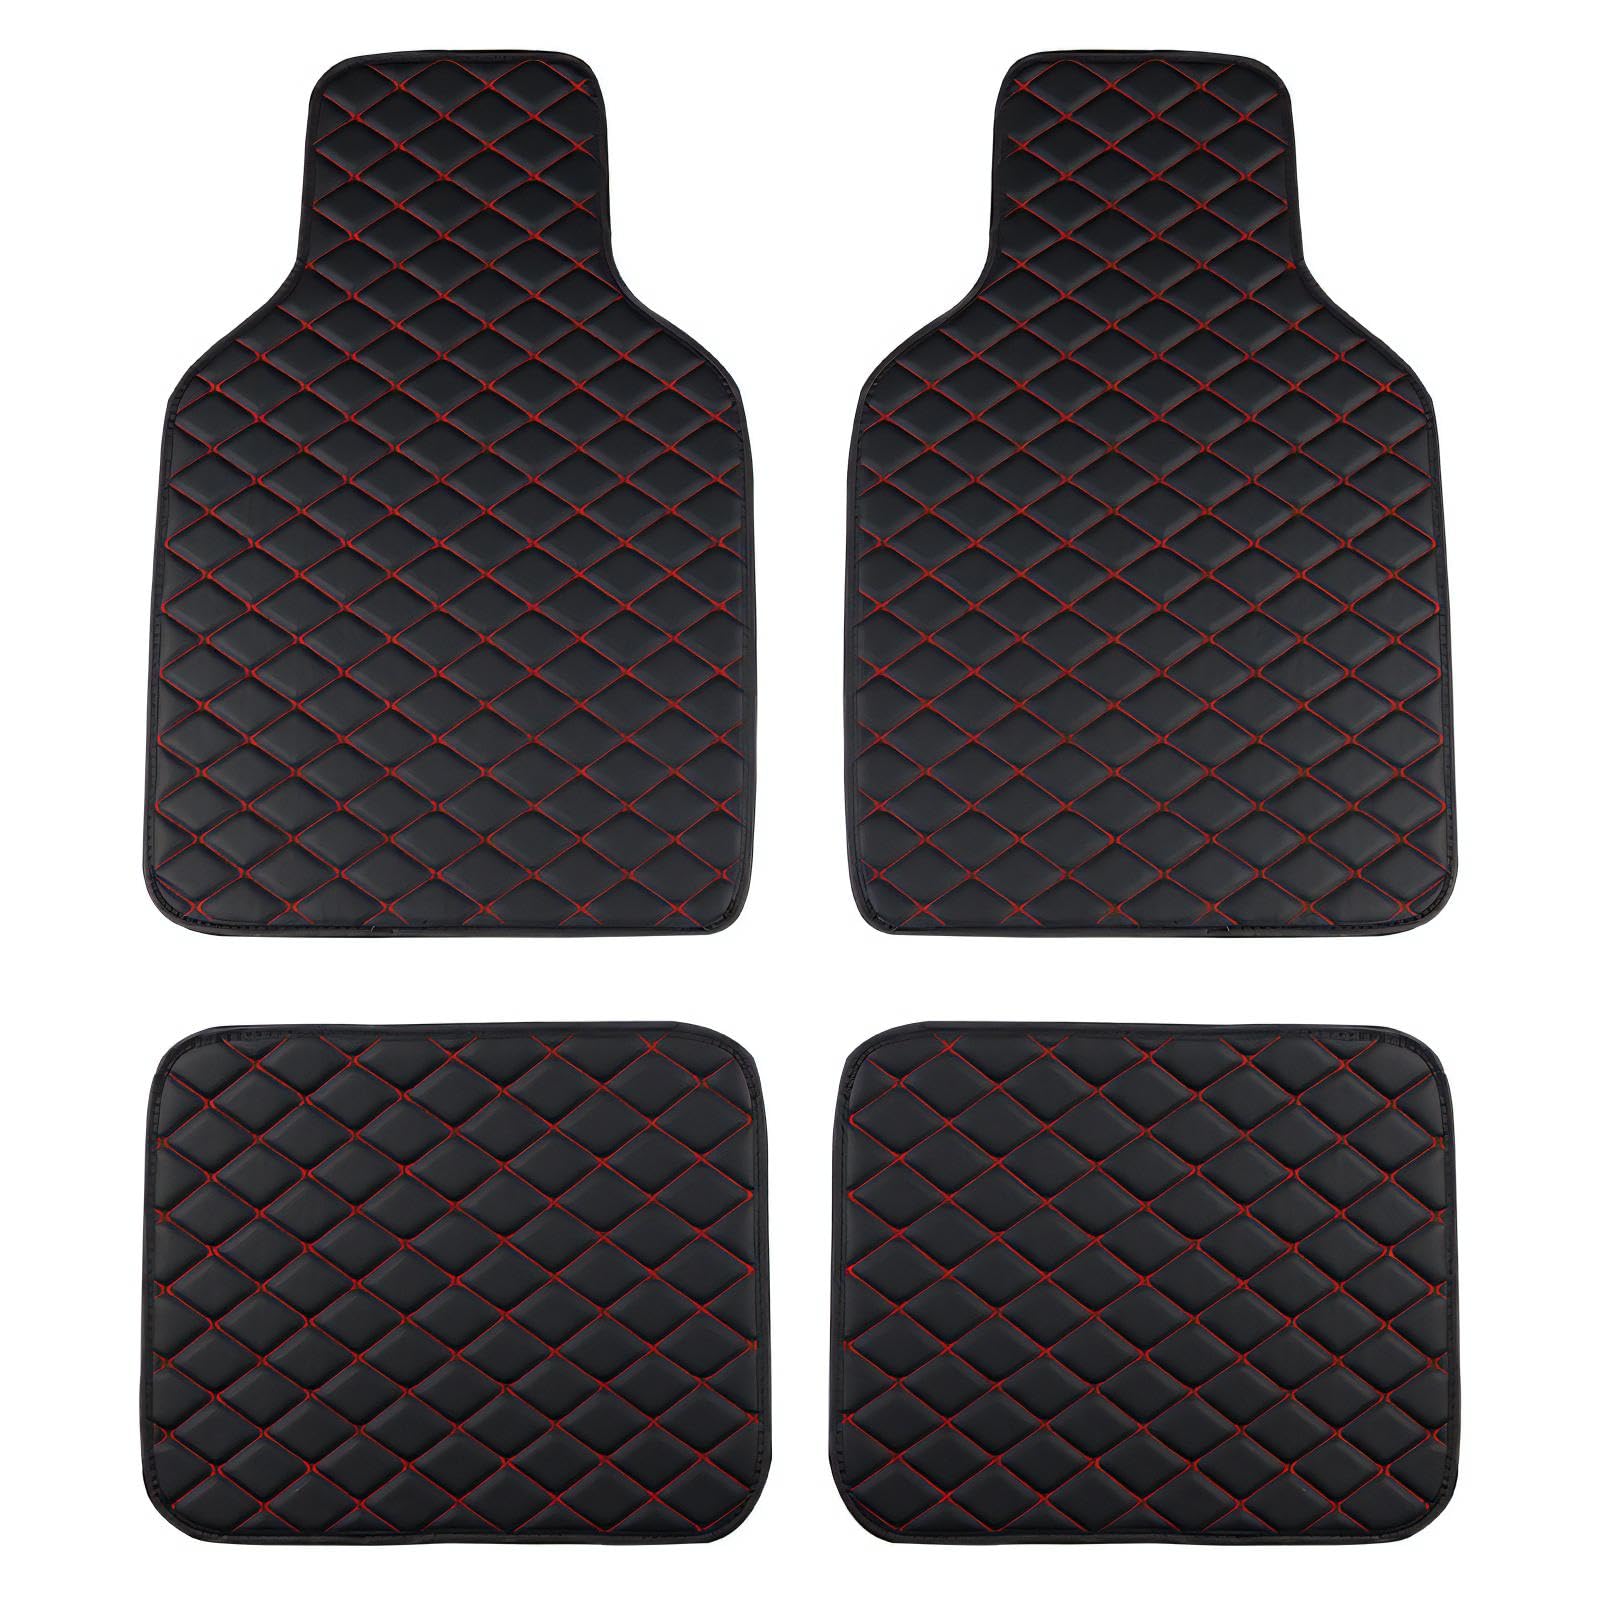 Auto Einzelteil FußMatte fur Benz C class(2door) 2012-2015, Auto FußMatte Heavy Duty Wear Resistant Carpet Waterproof and Flexible von GRASKY